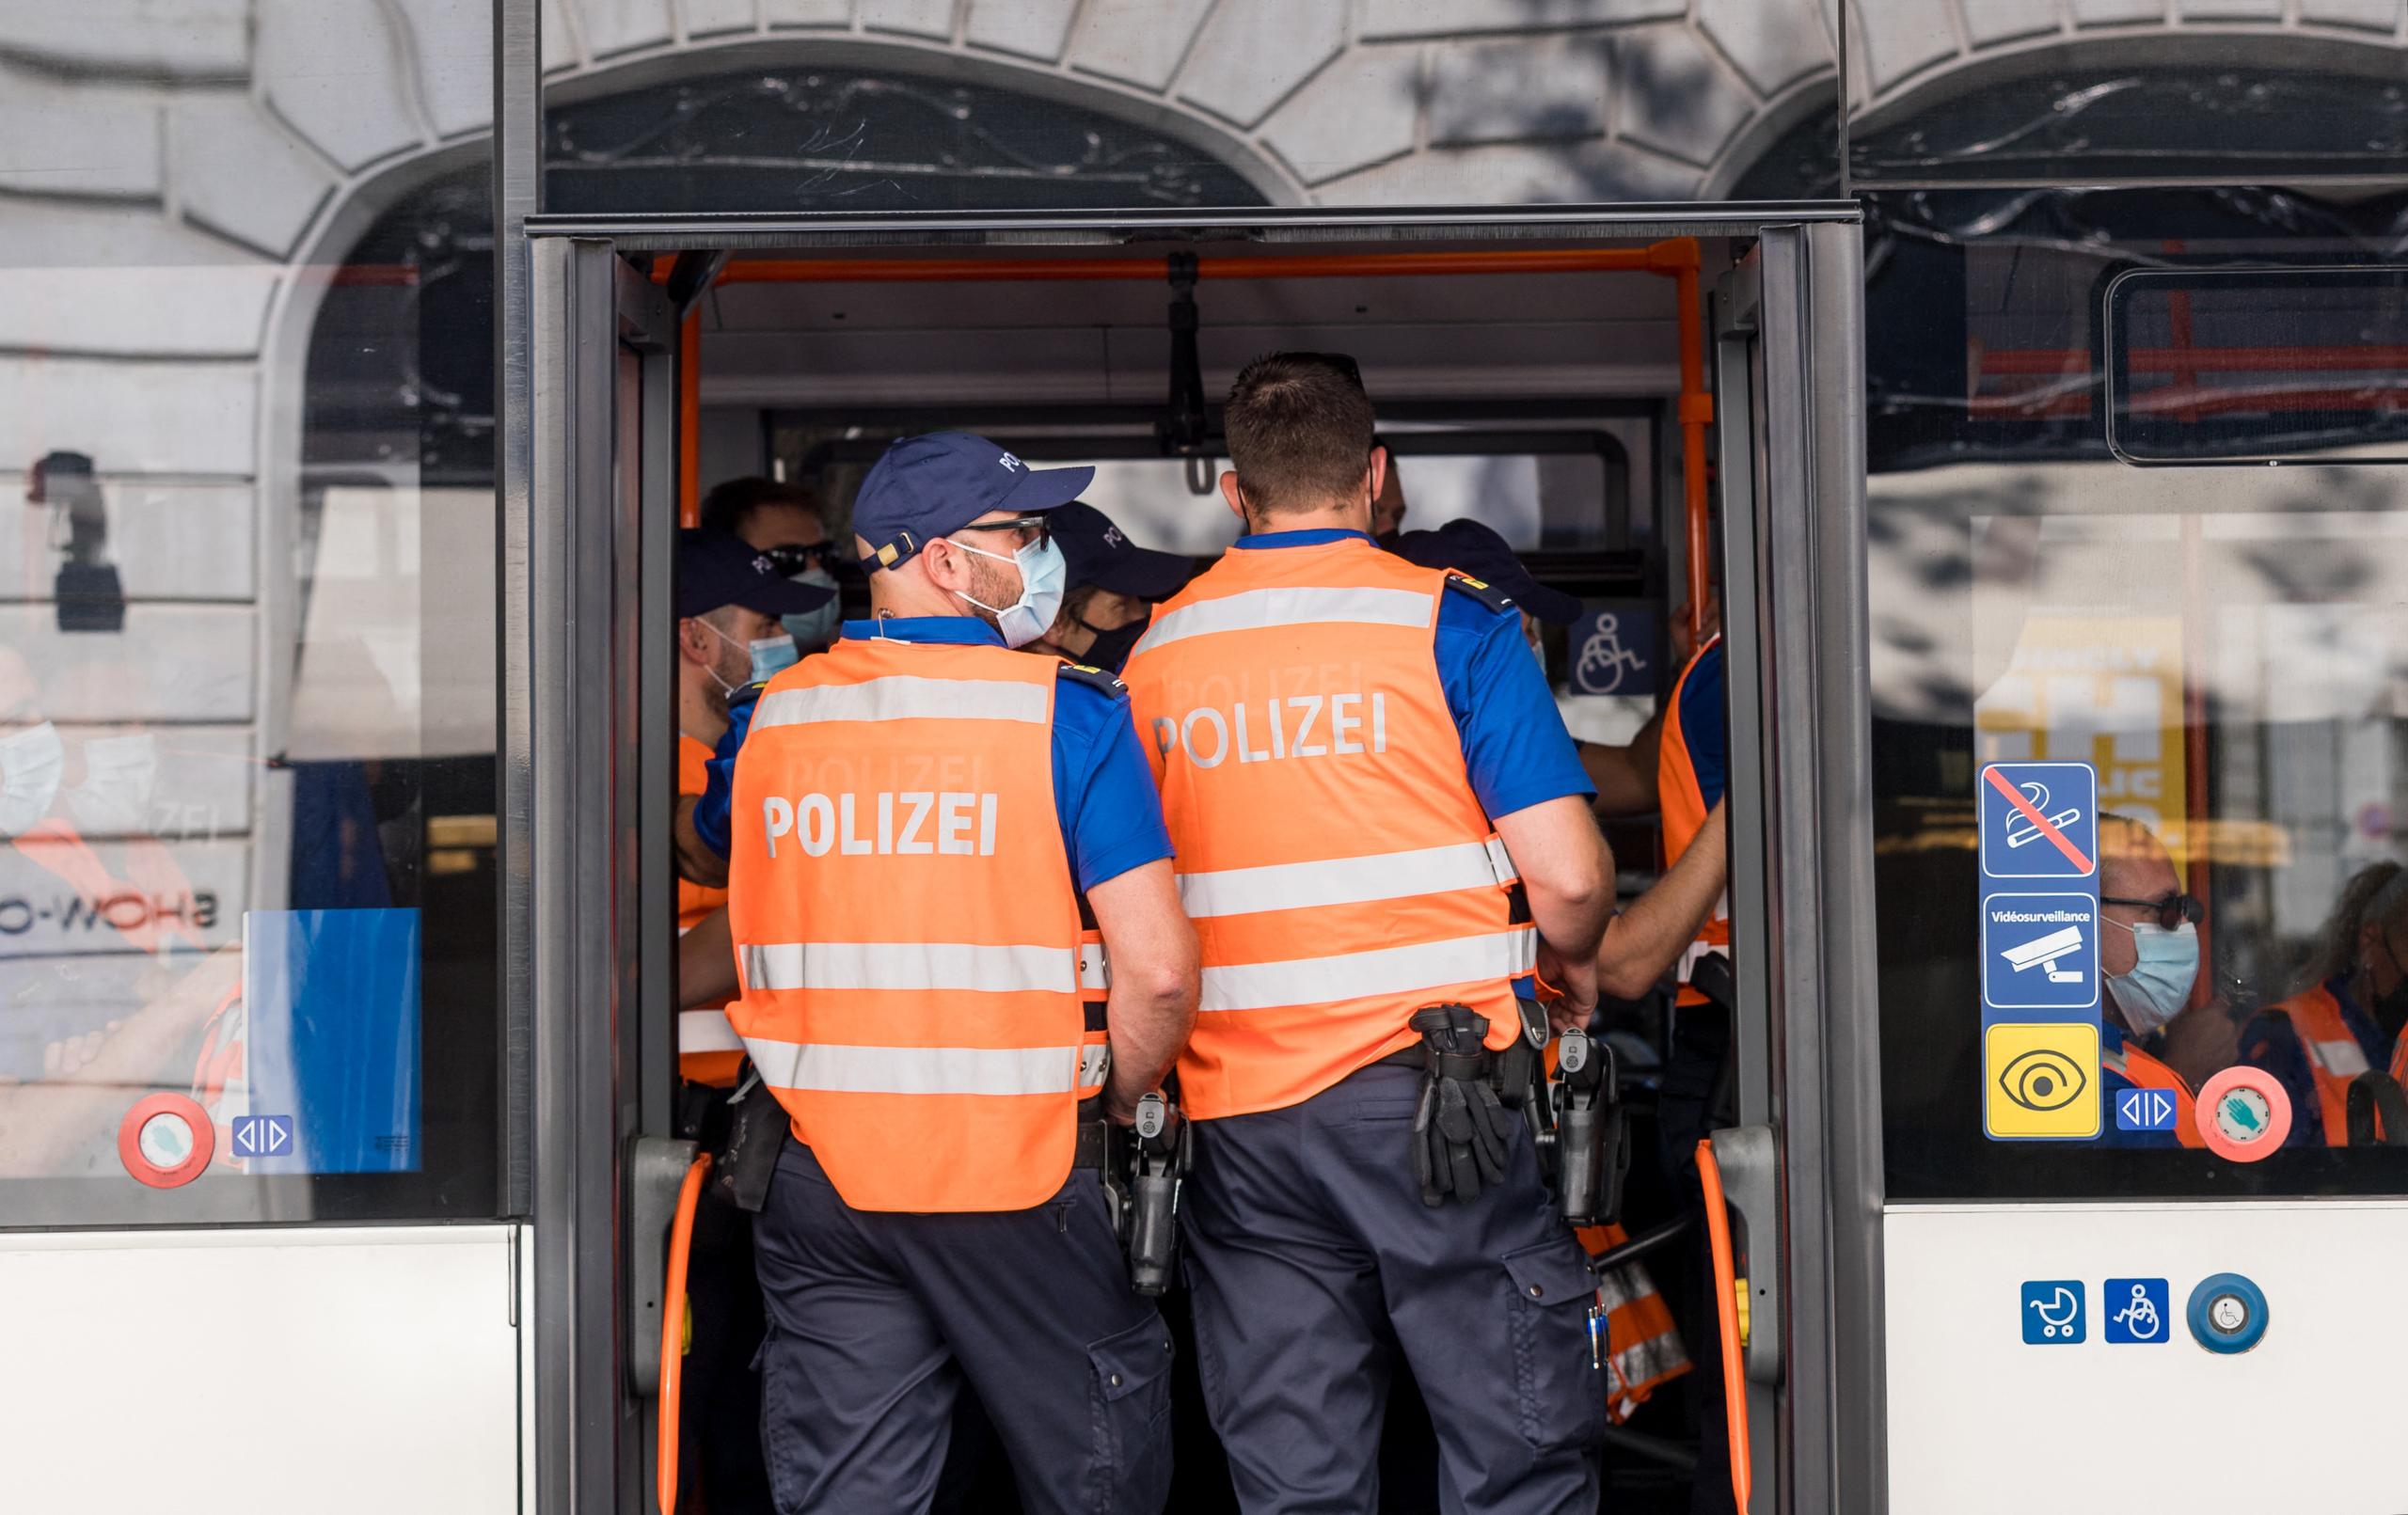 Police presence on public transport in Geneva.